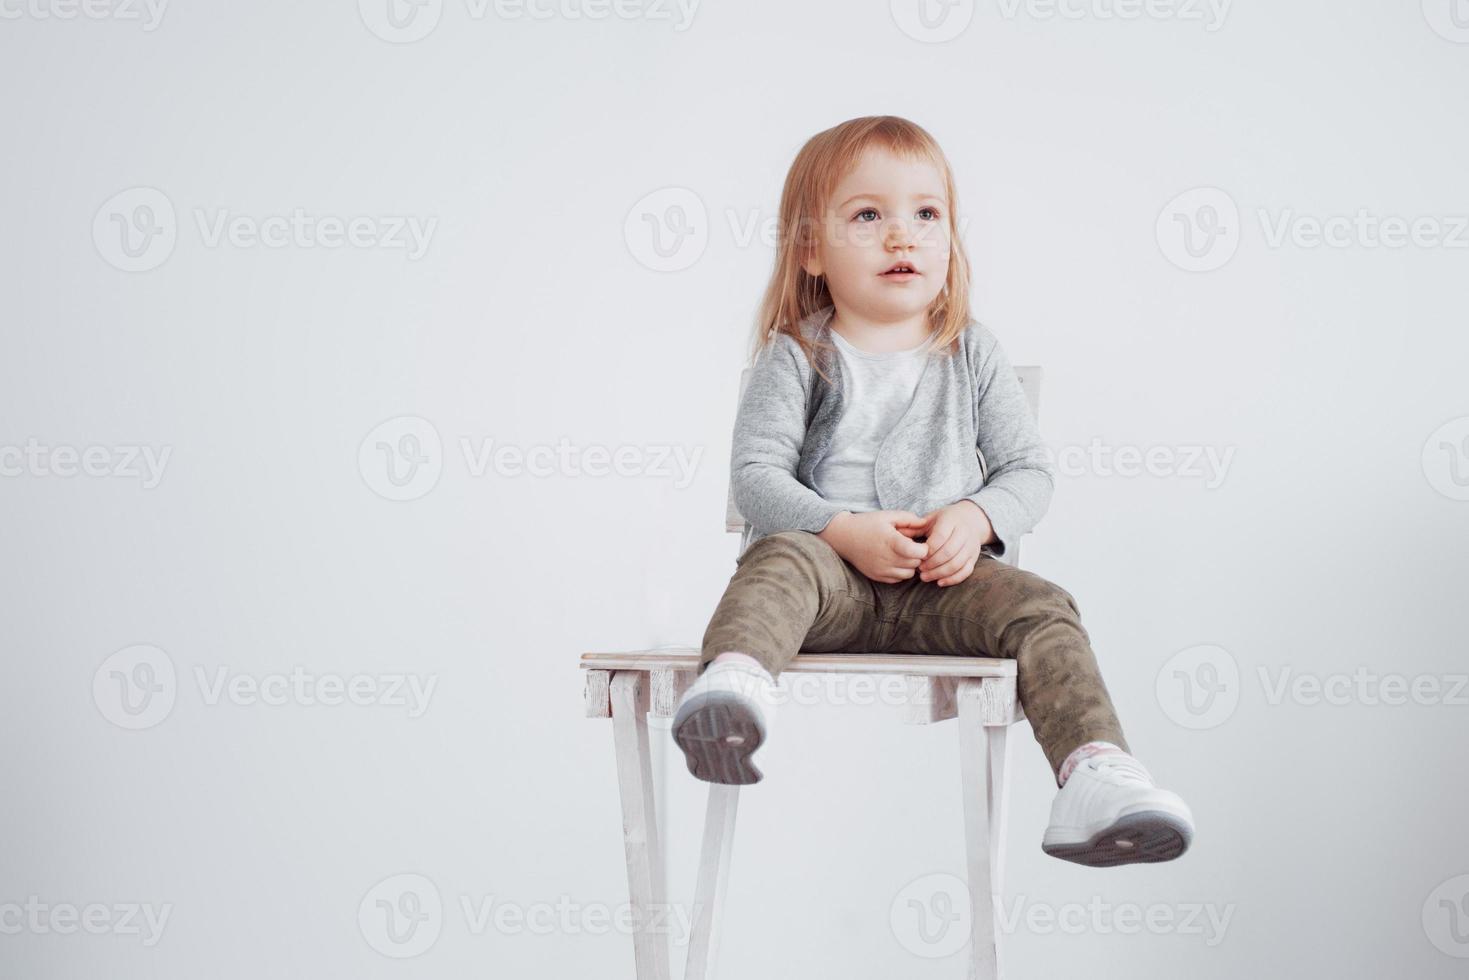 uma criança, uma menina sentada em um banquinho alto rindo foto